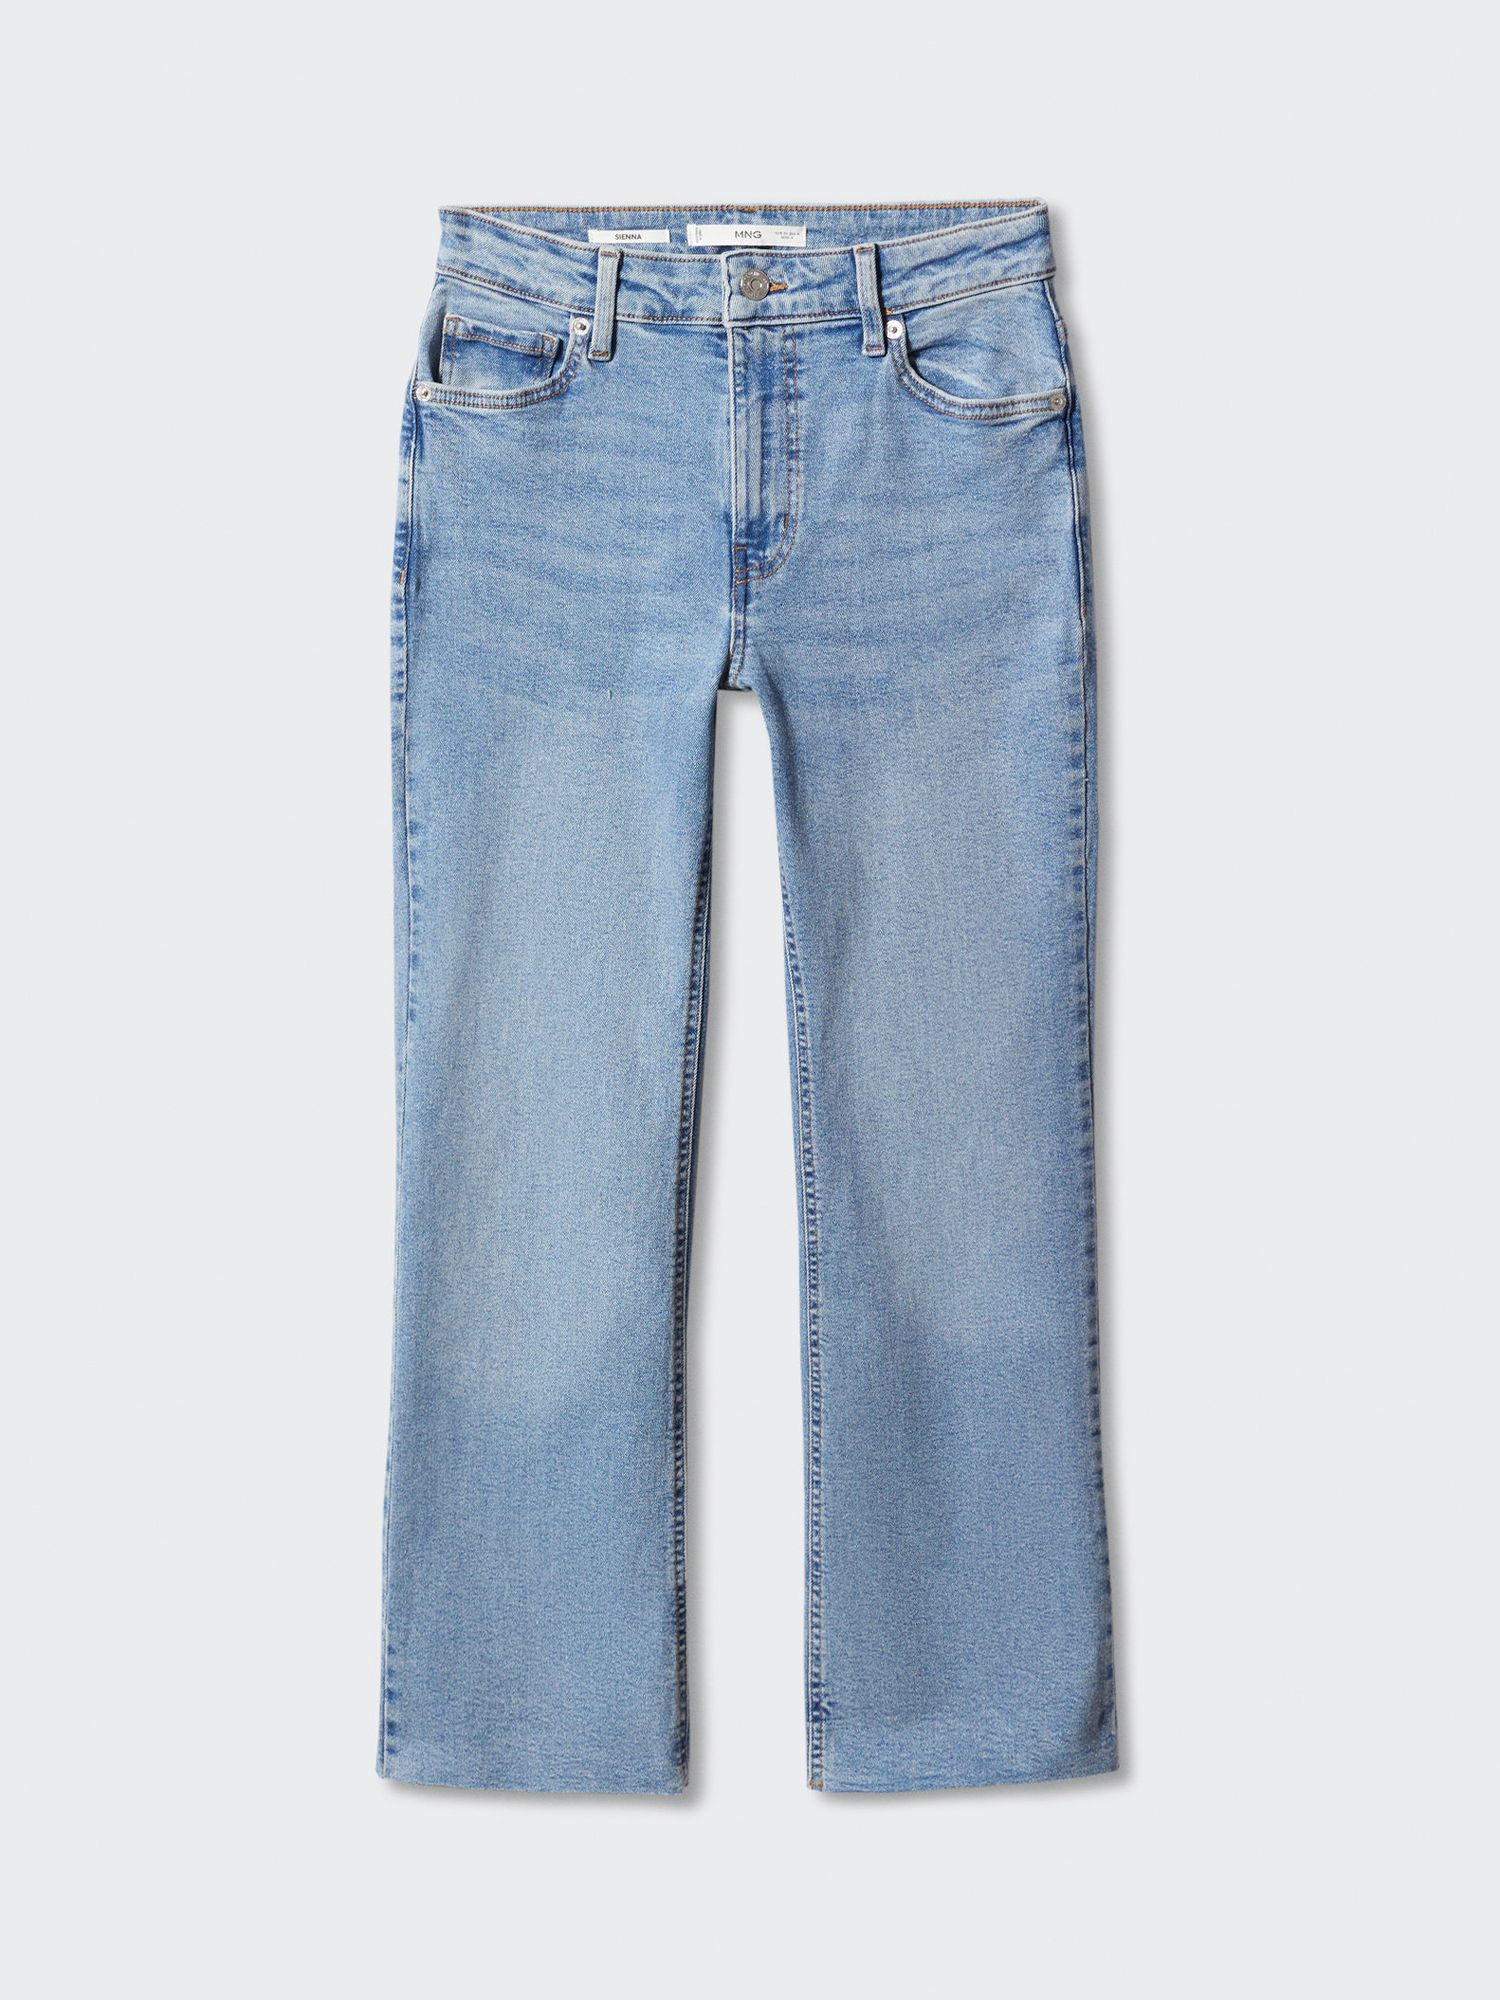 Mango Sienna Crop Flared Jeans, Blue, 4